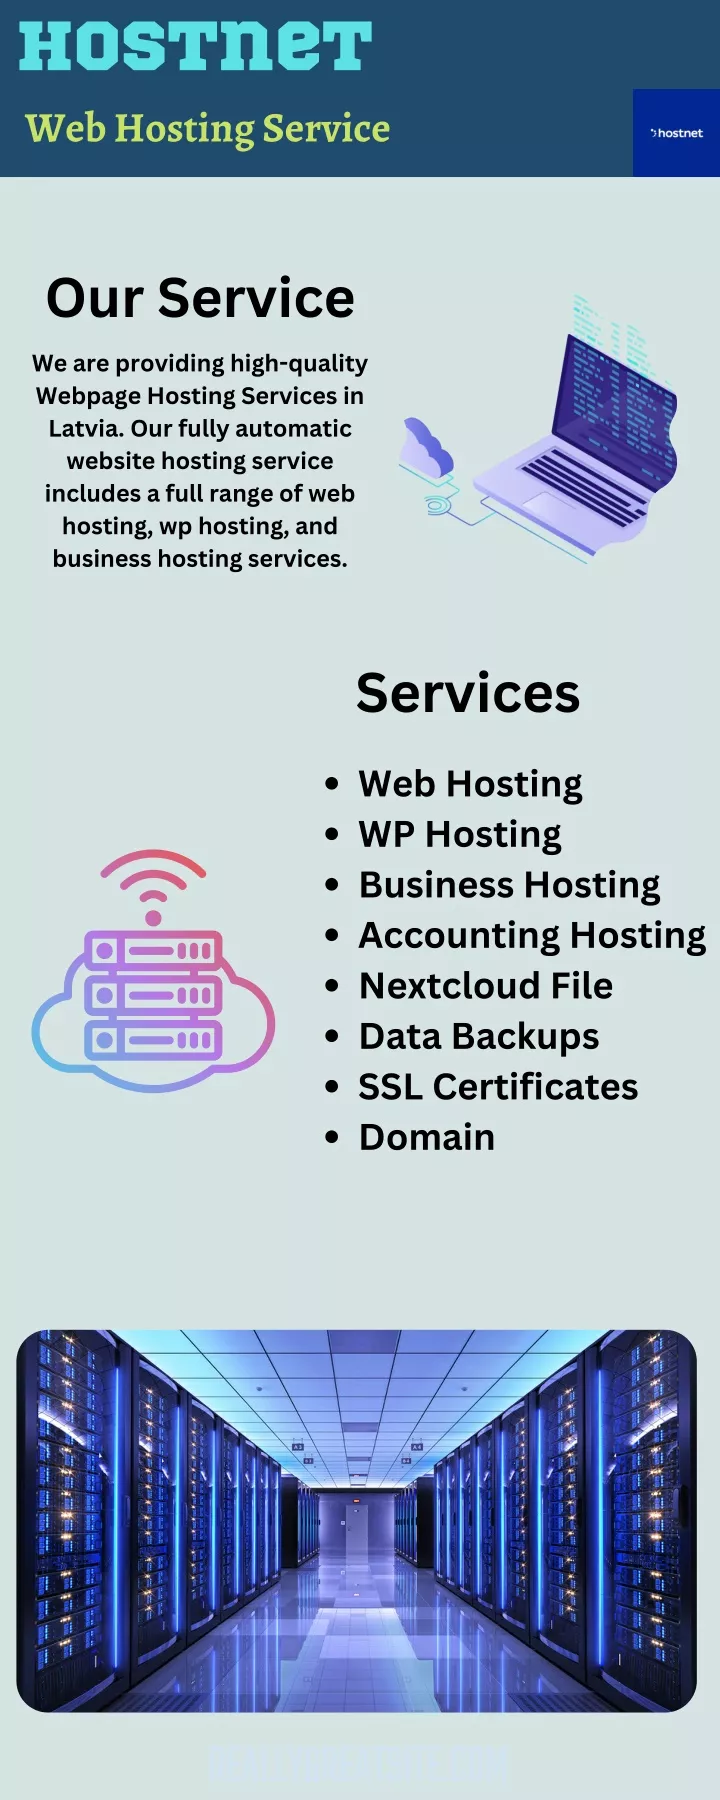 hostnet web hosting service